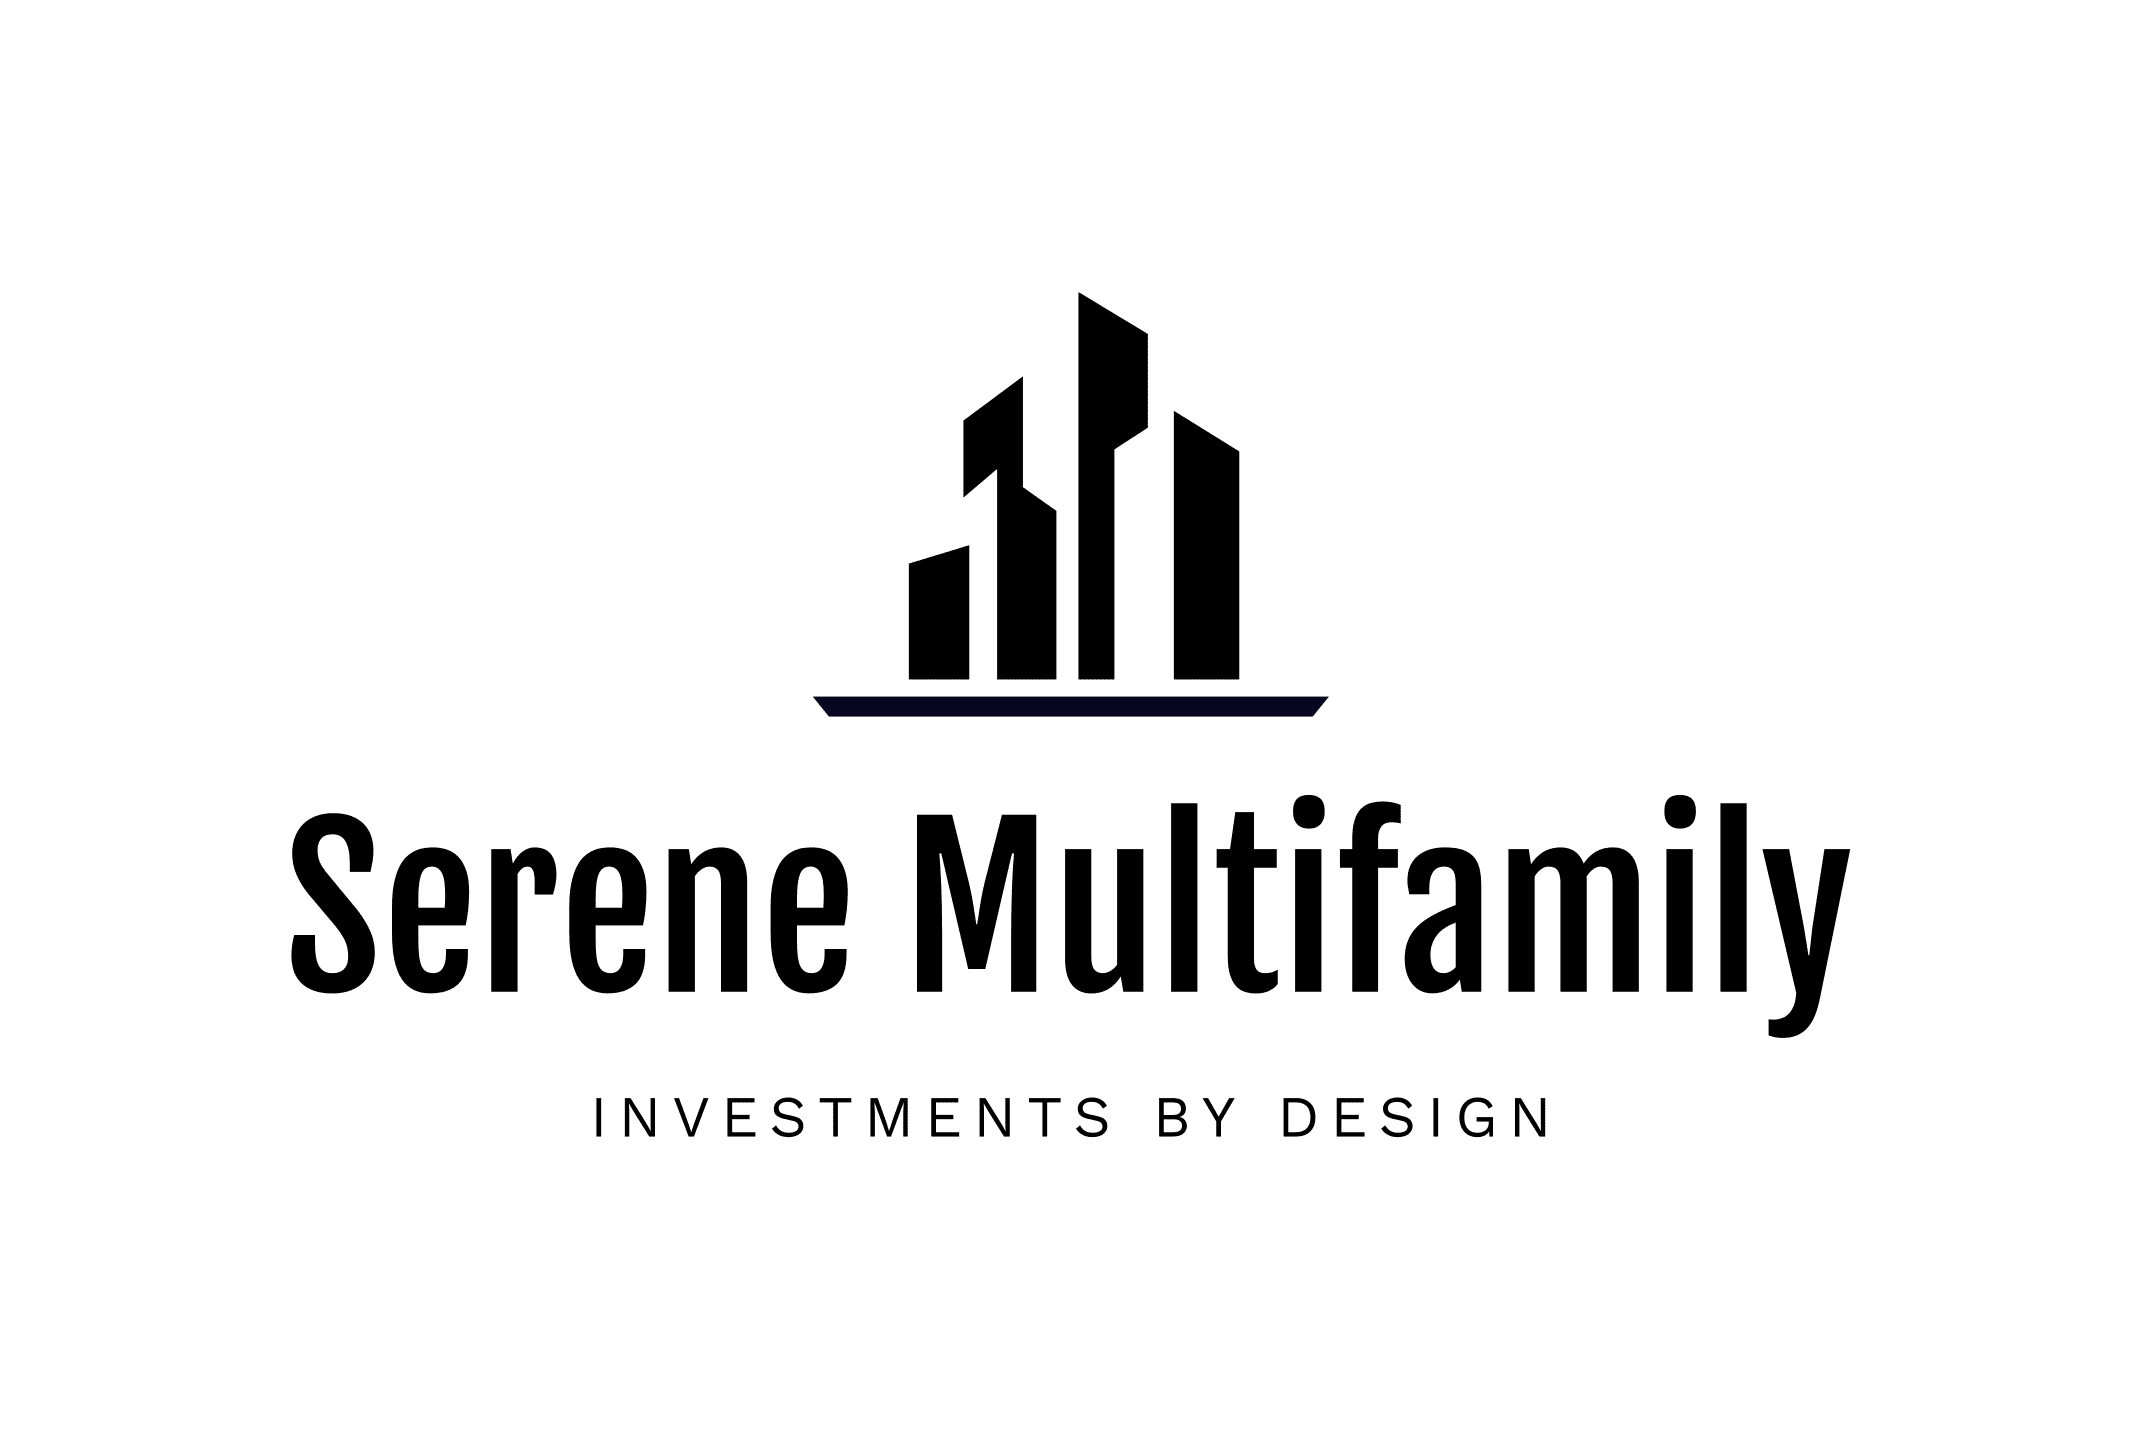 Serene Multifamily